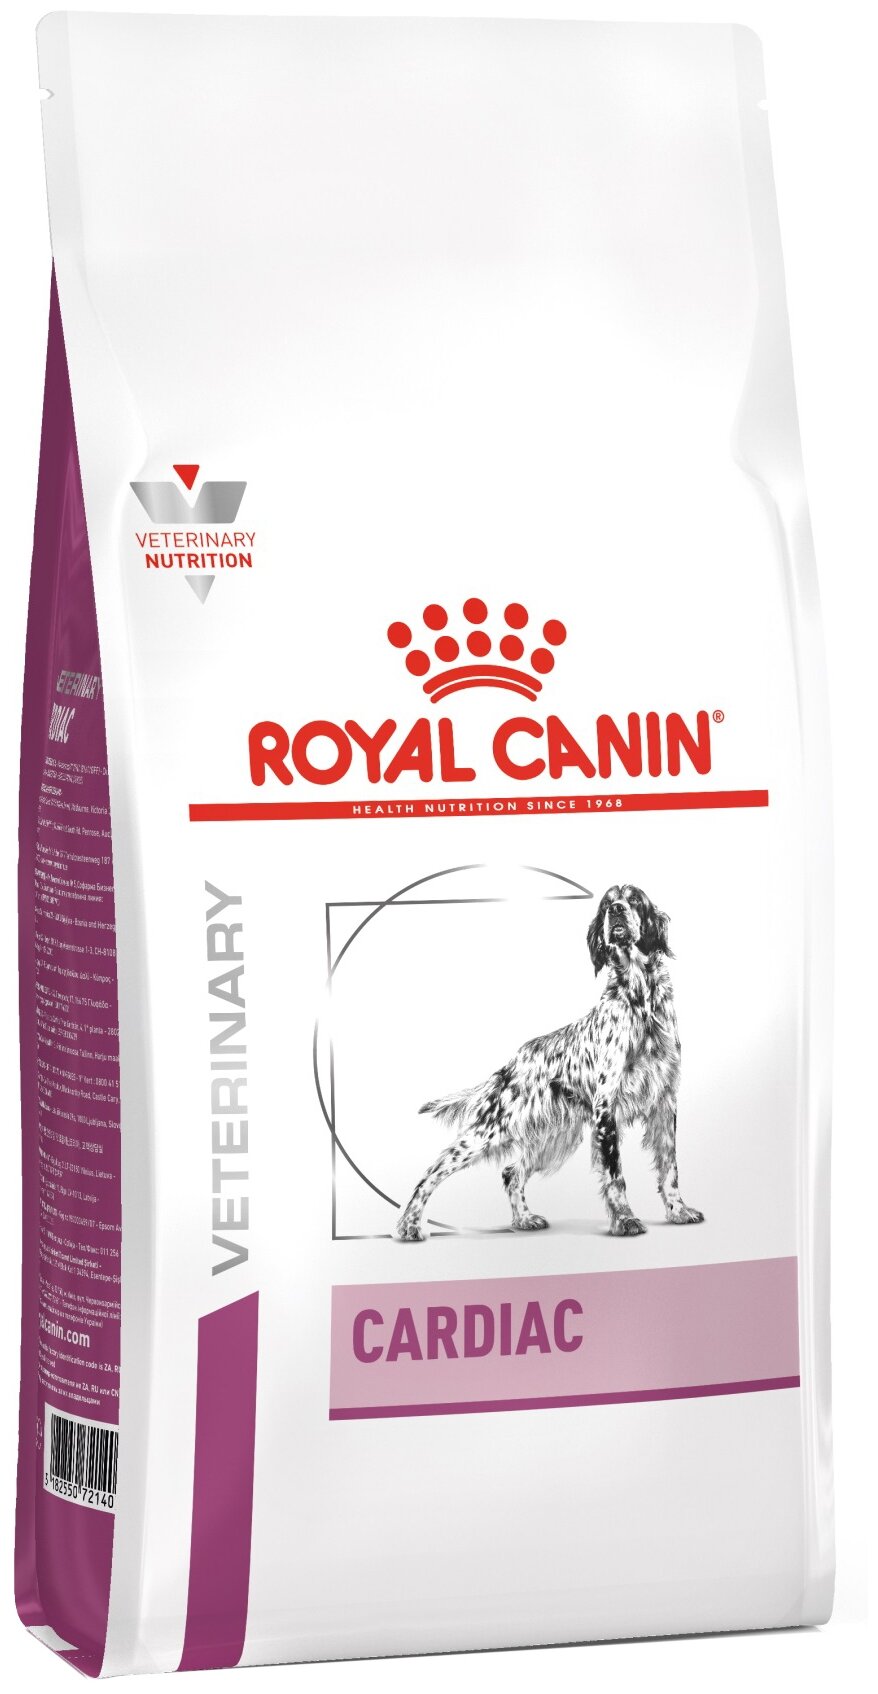 Royal Canin Cardiac корм для собак при сердечной недостаточности Диетический, 2 кг.